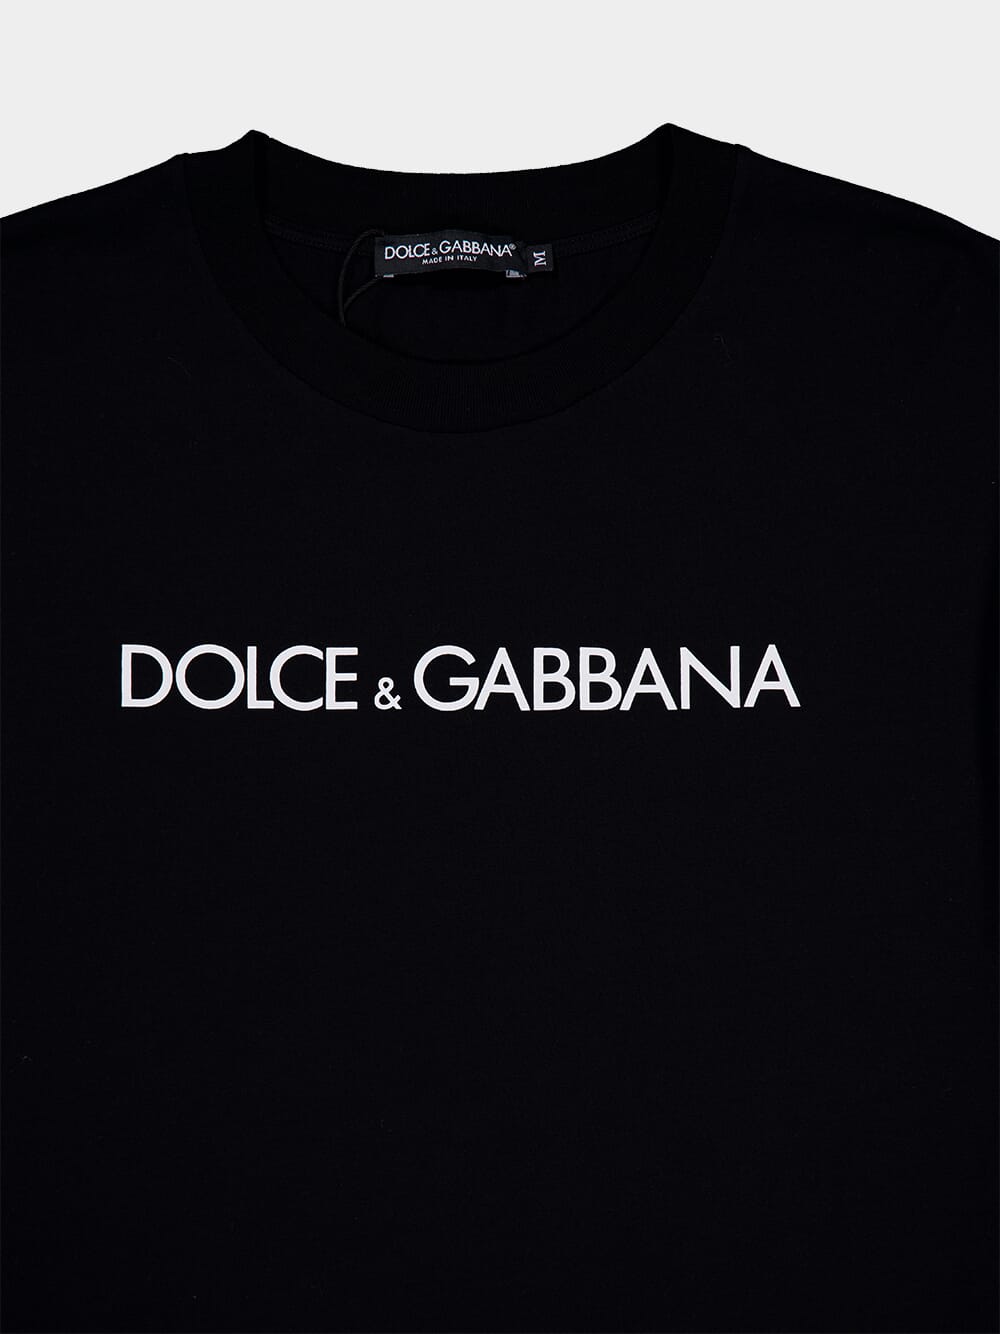 Dolce & GabbanaLogo Cotton T-Shirt at Fashion Clinic